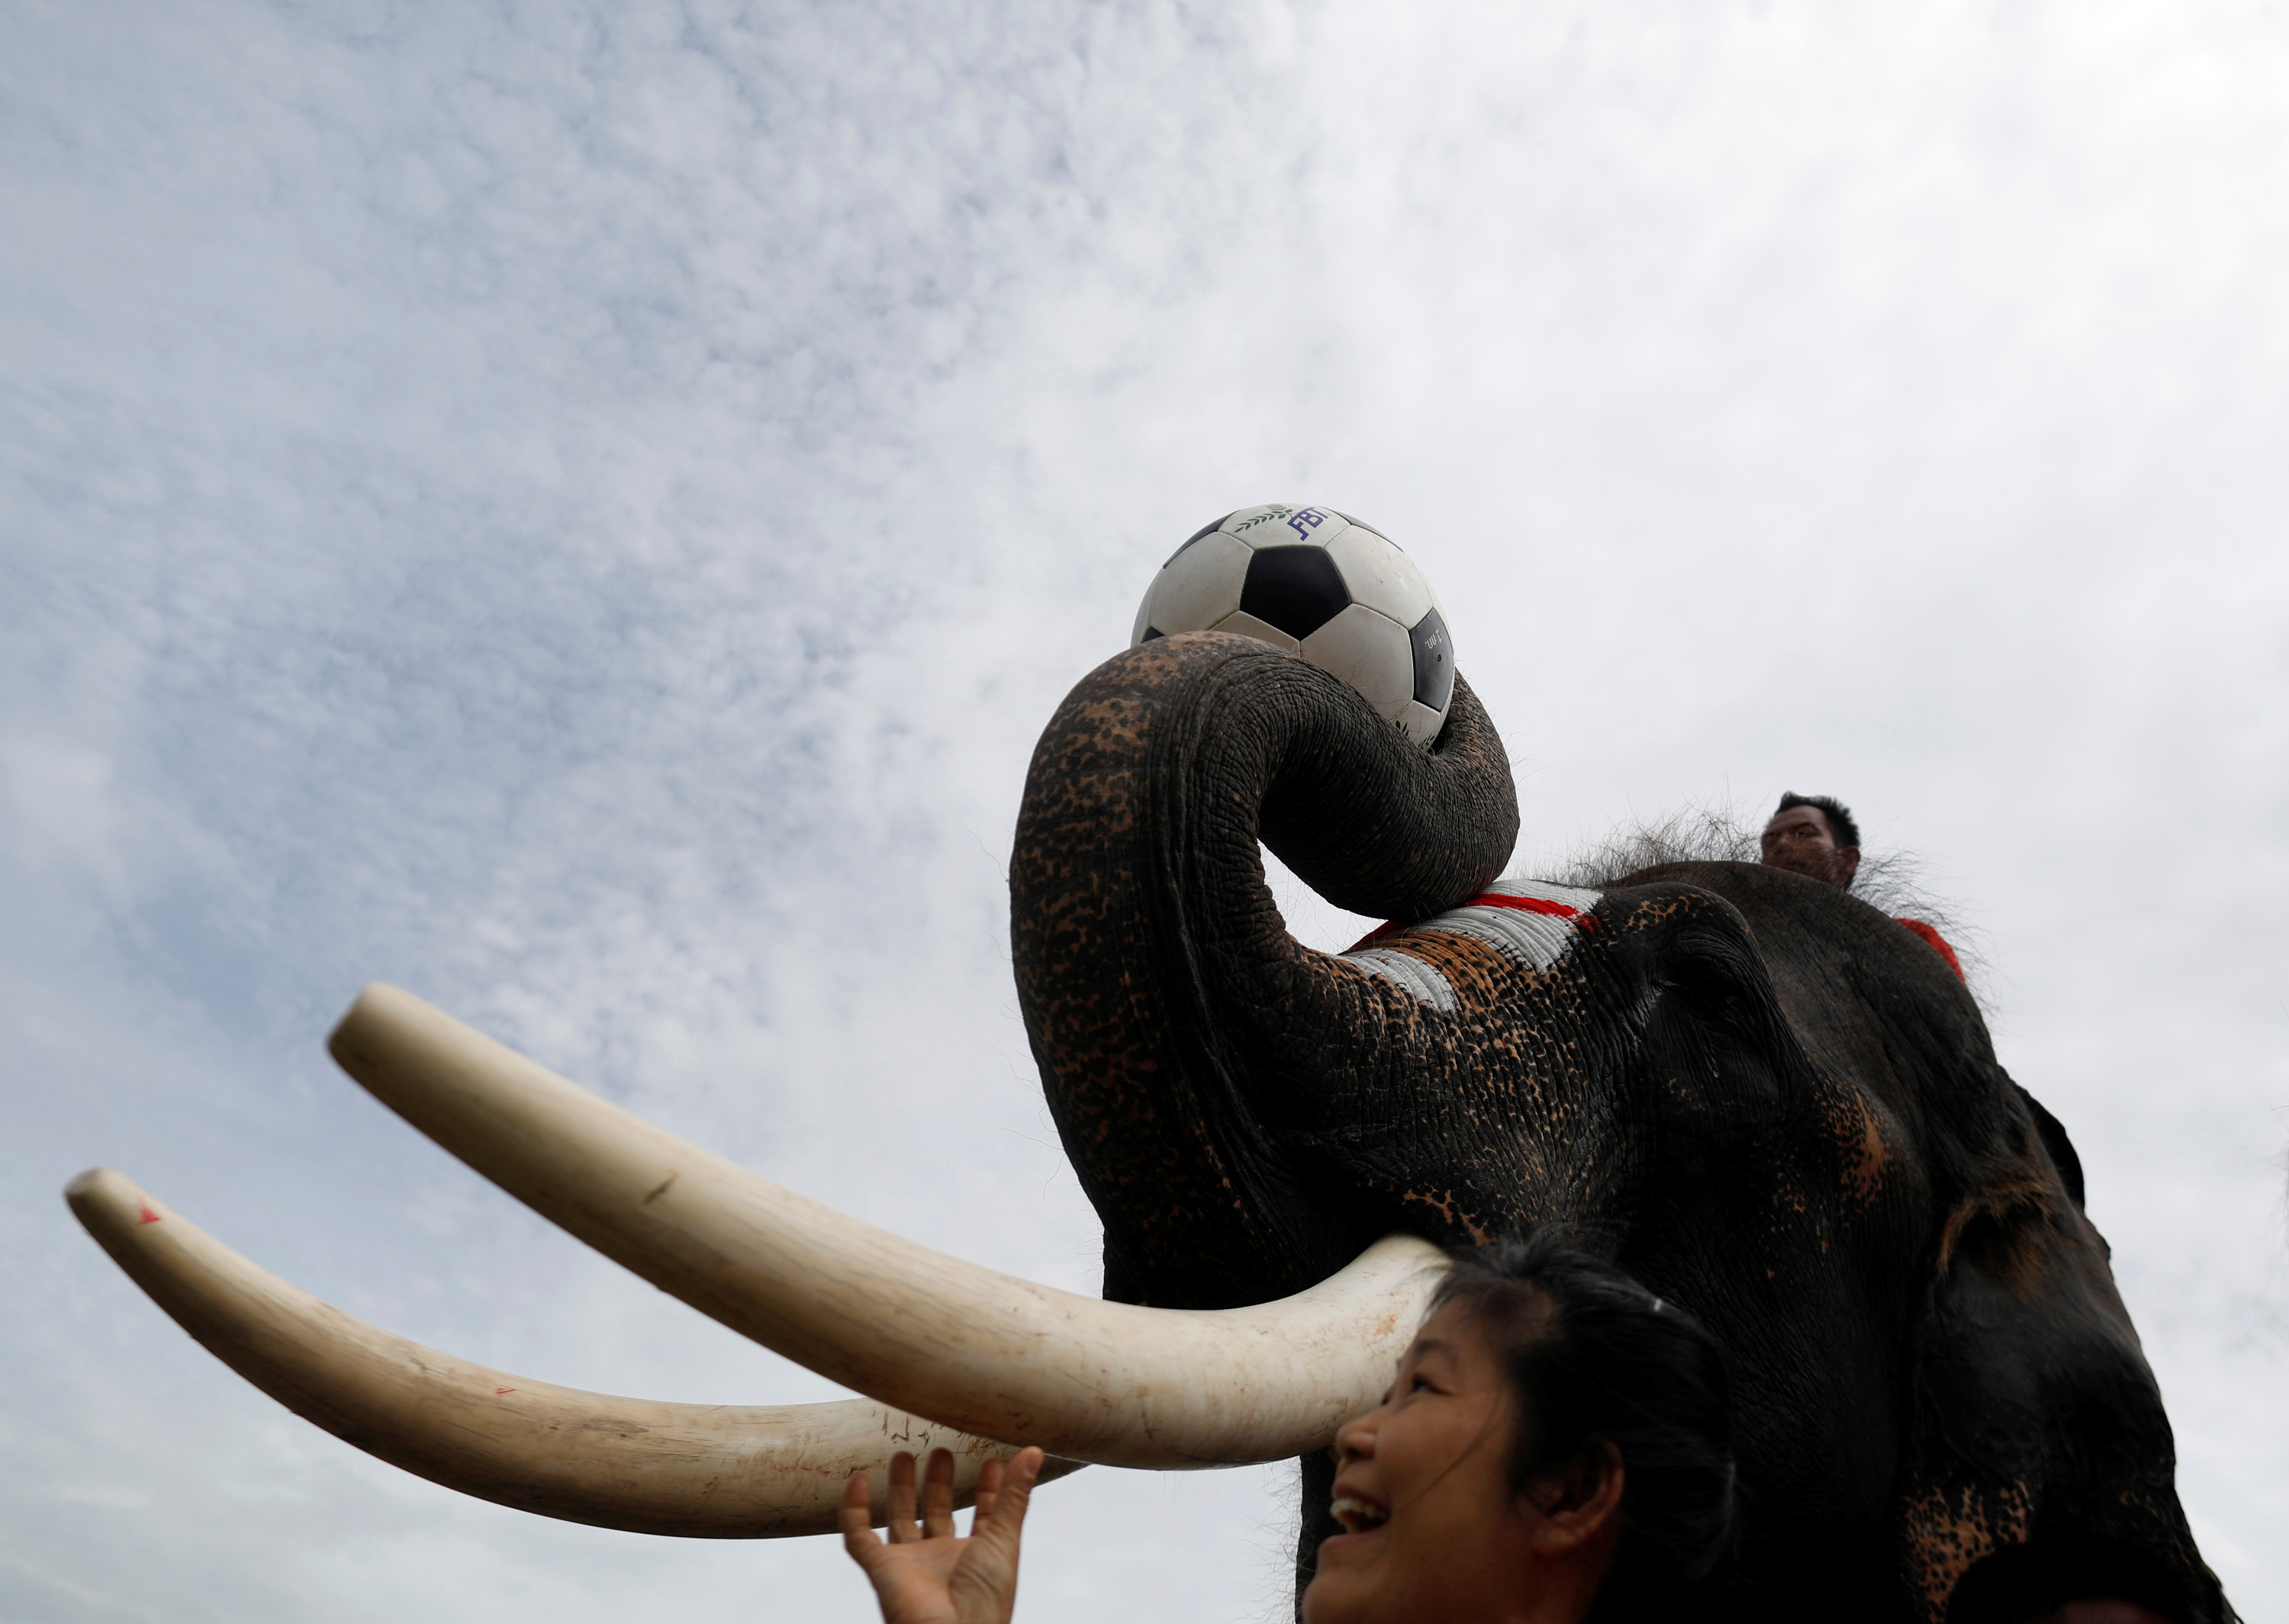 فتاة تايلاندية تقف بجوار فيل أثناء لعبه مباراة كرة قدم